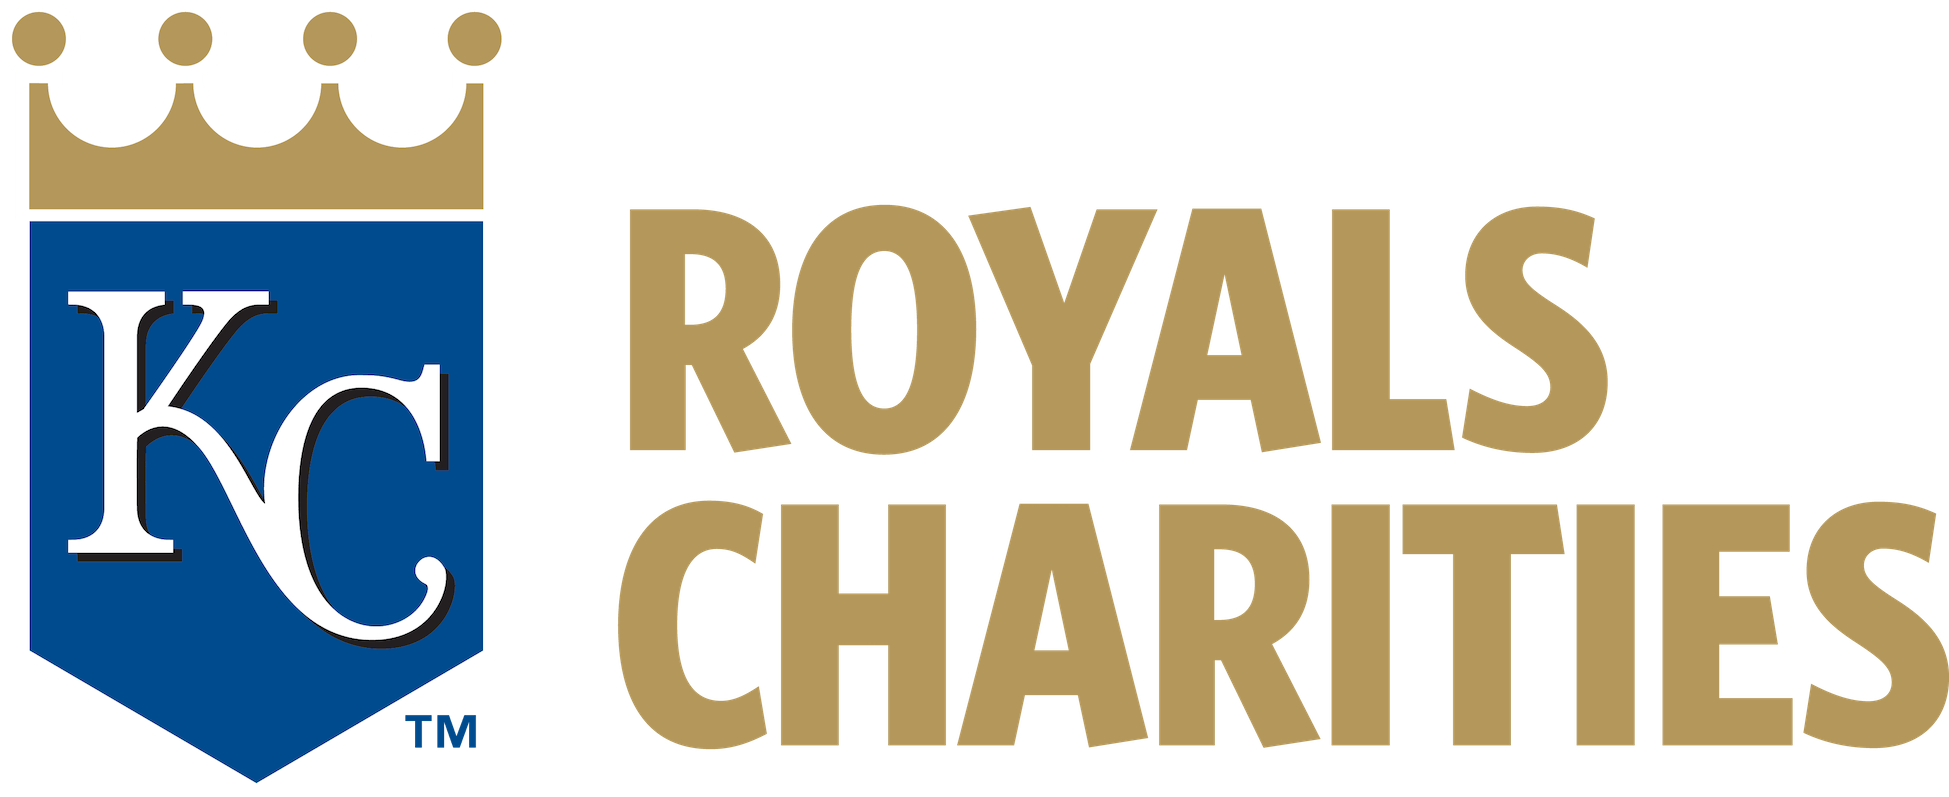 Royals Baseball Logo - Kansas city royals crown logo graphic royalty free stock - RR ...